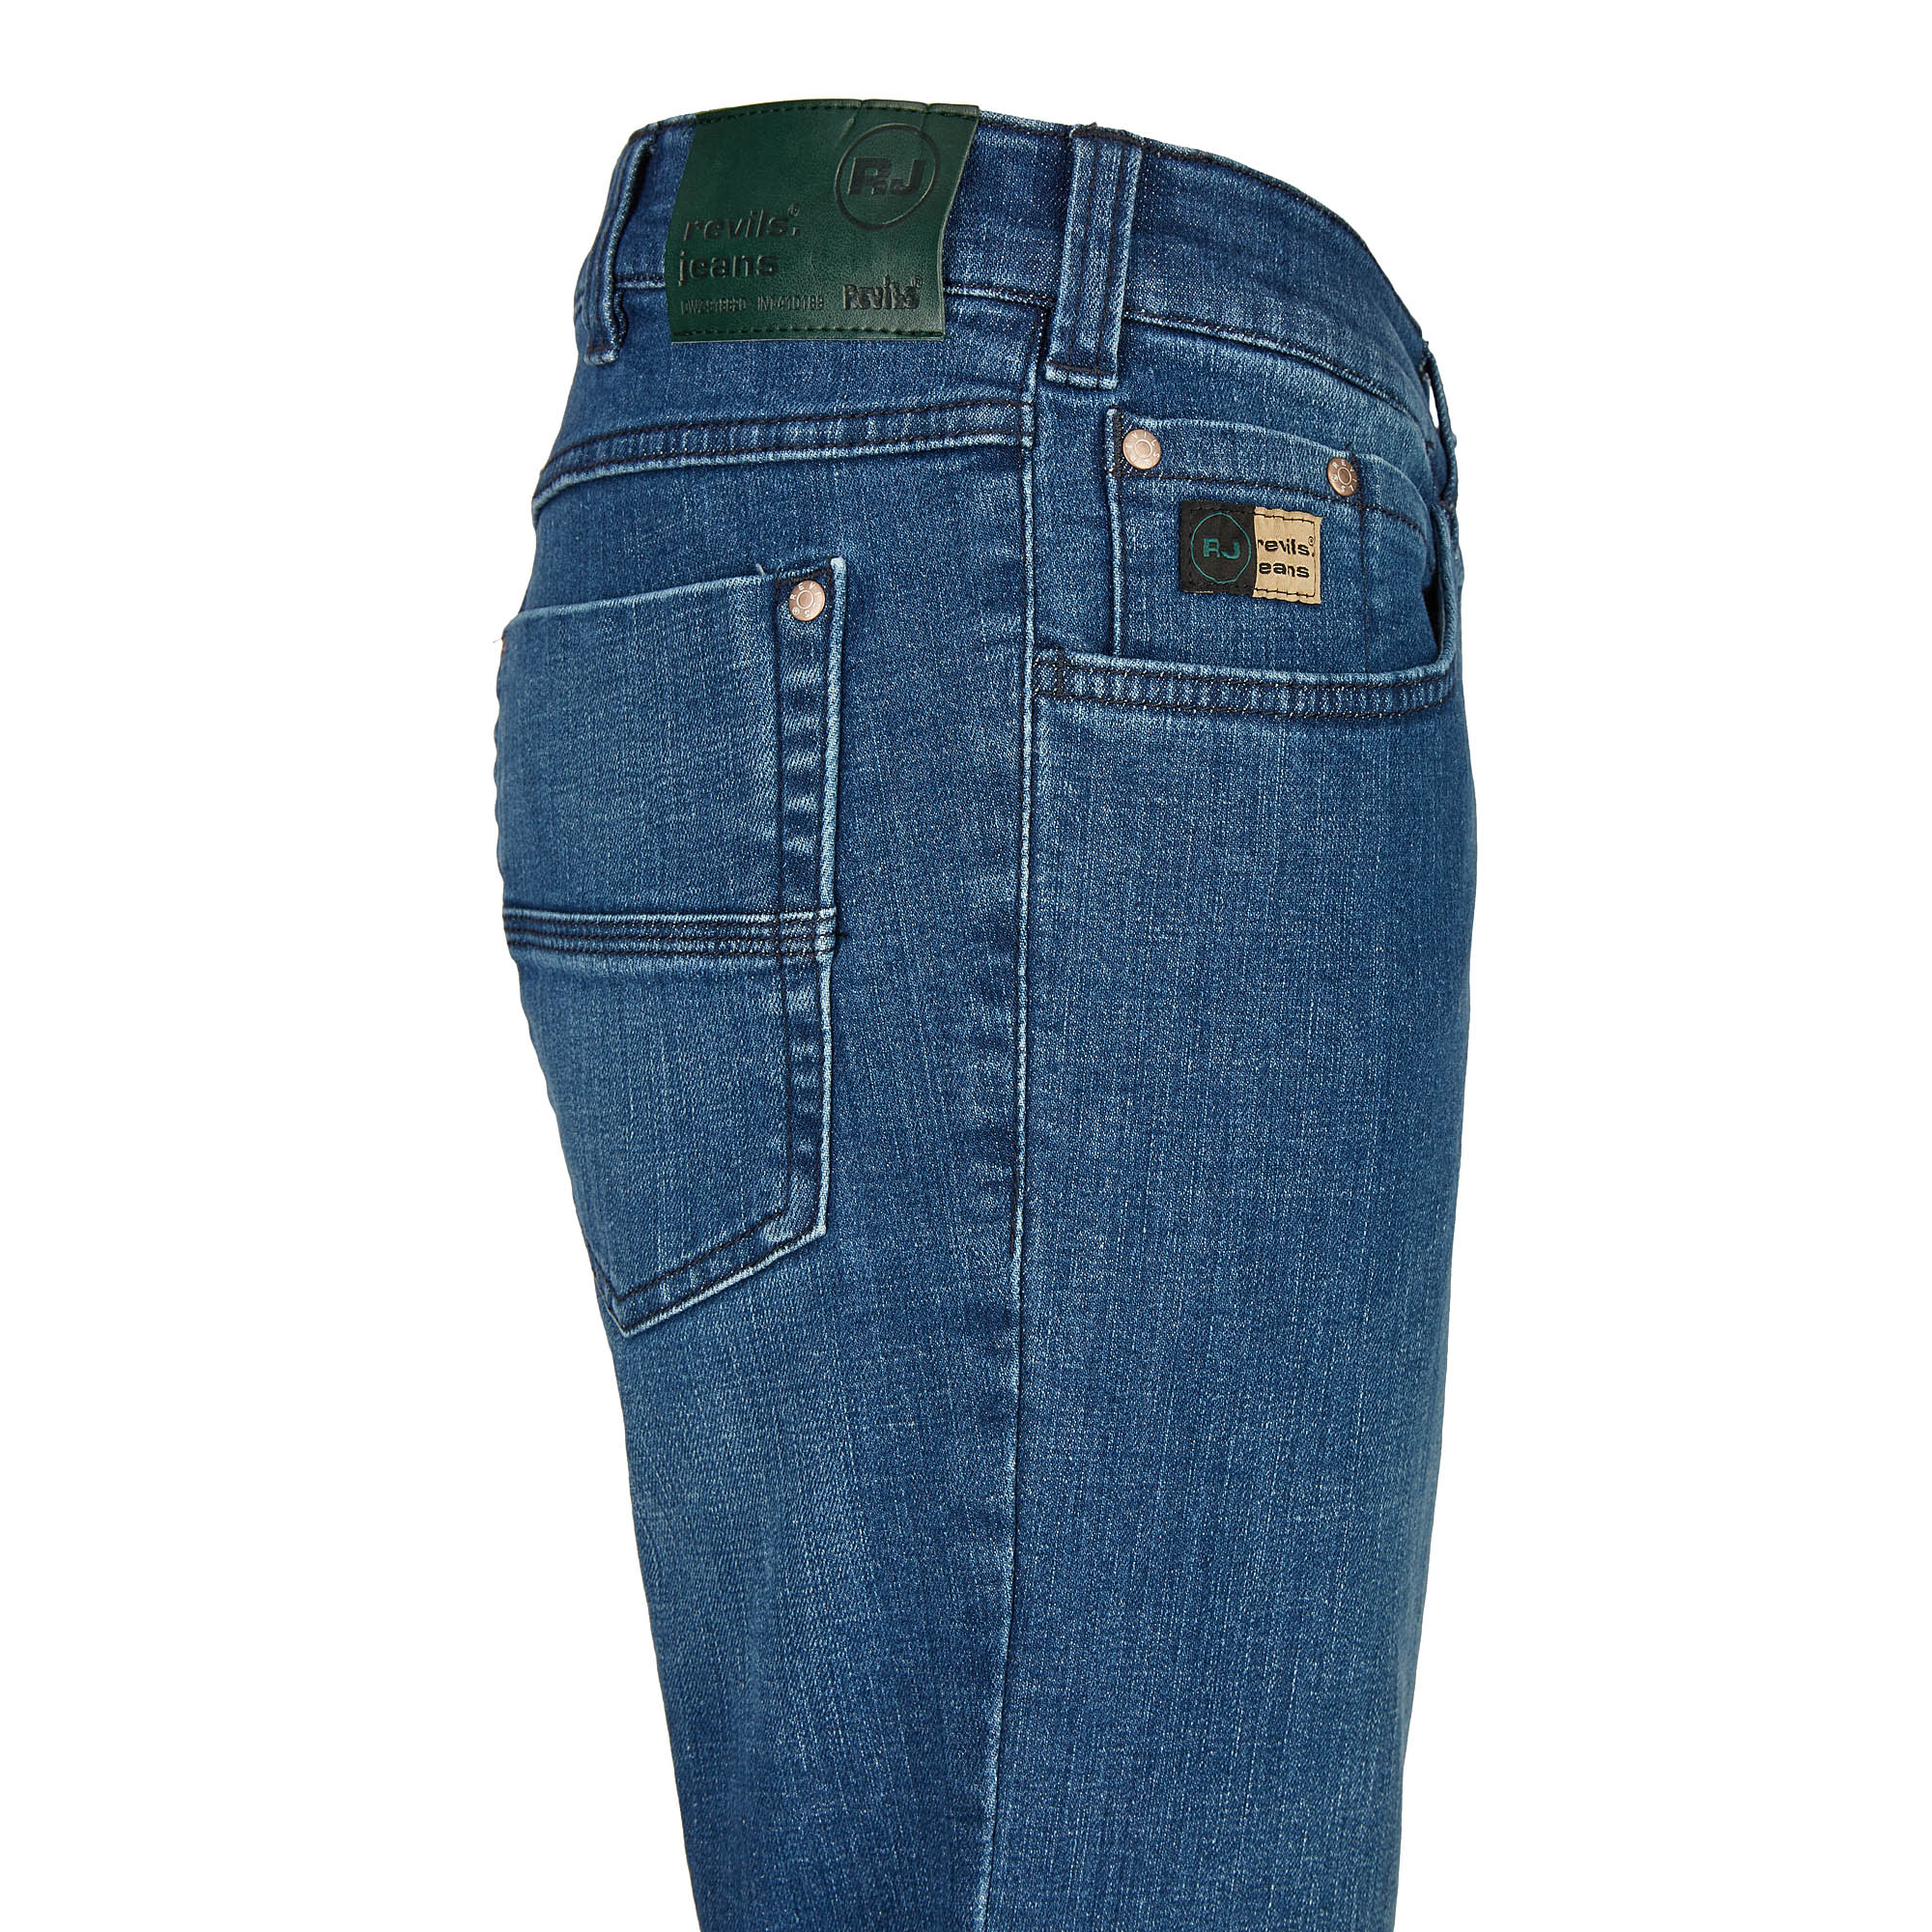 007130541330 4 Revils Jeans Hosen